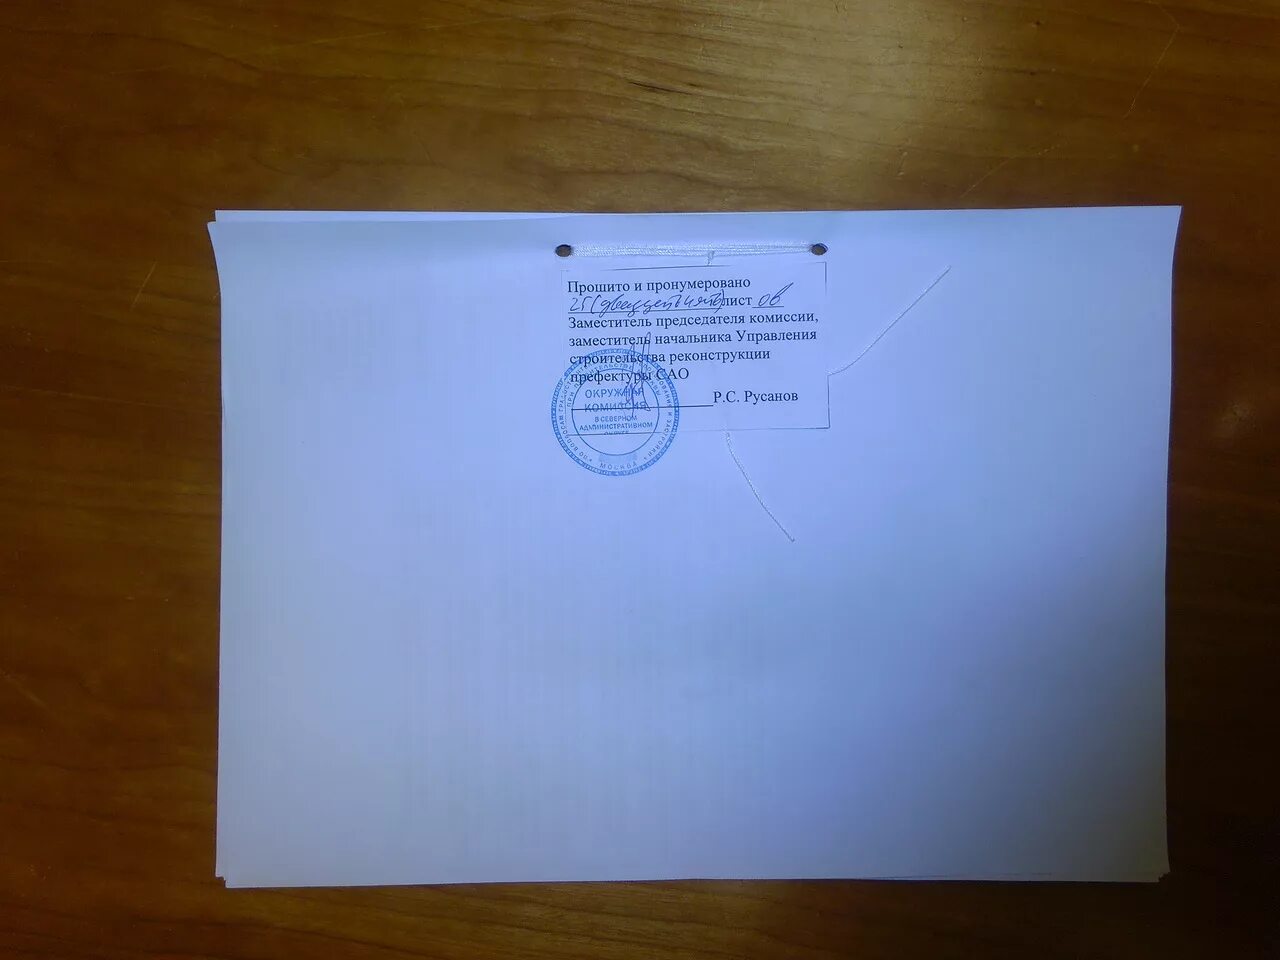 Сшивка документов. Прошнуровать документы. Документ пронумерован и прошнурован. Опечатанный конверт.